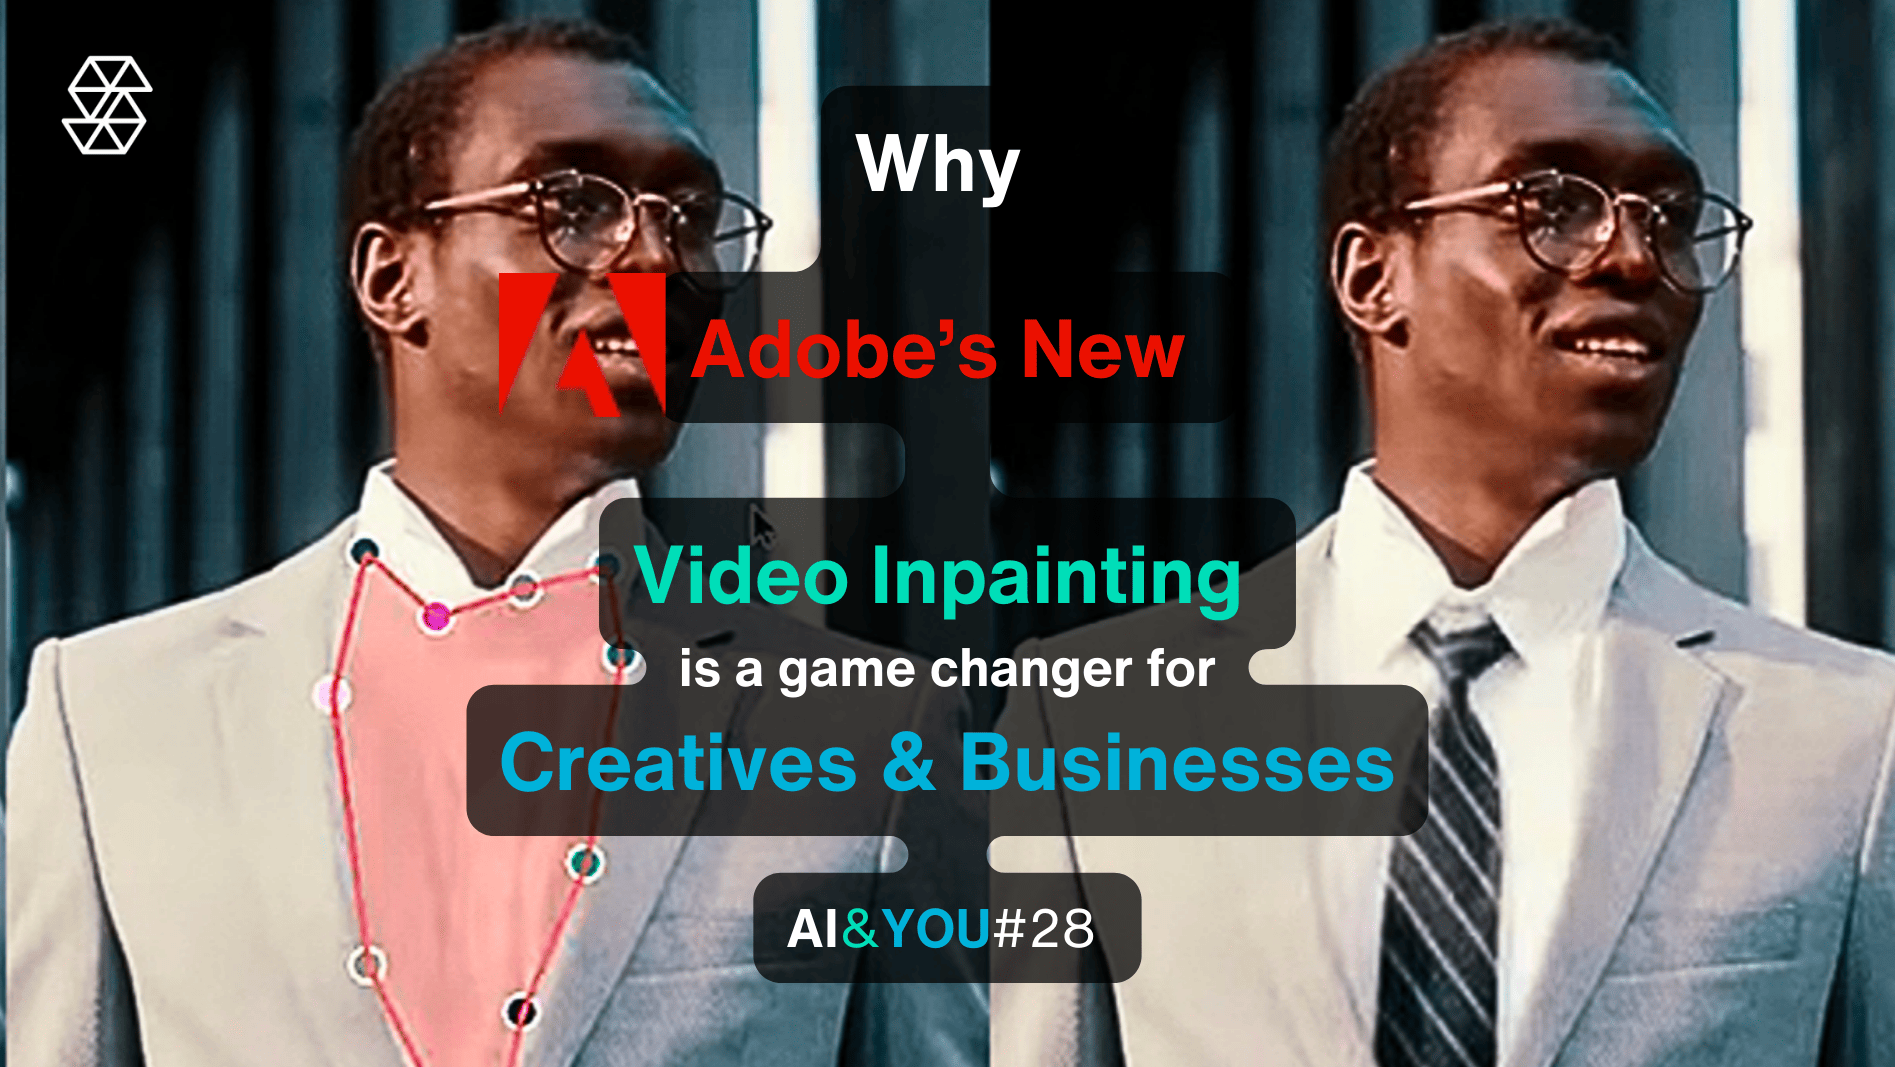 AI&YOU#28: "Project Fast Fill" від Adobe революціонізує роботу з відео для творців та бізнесу